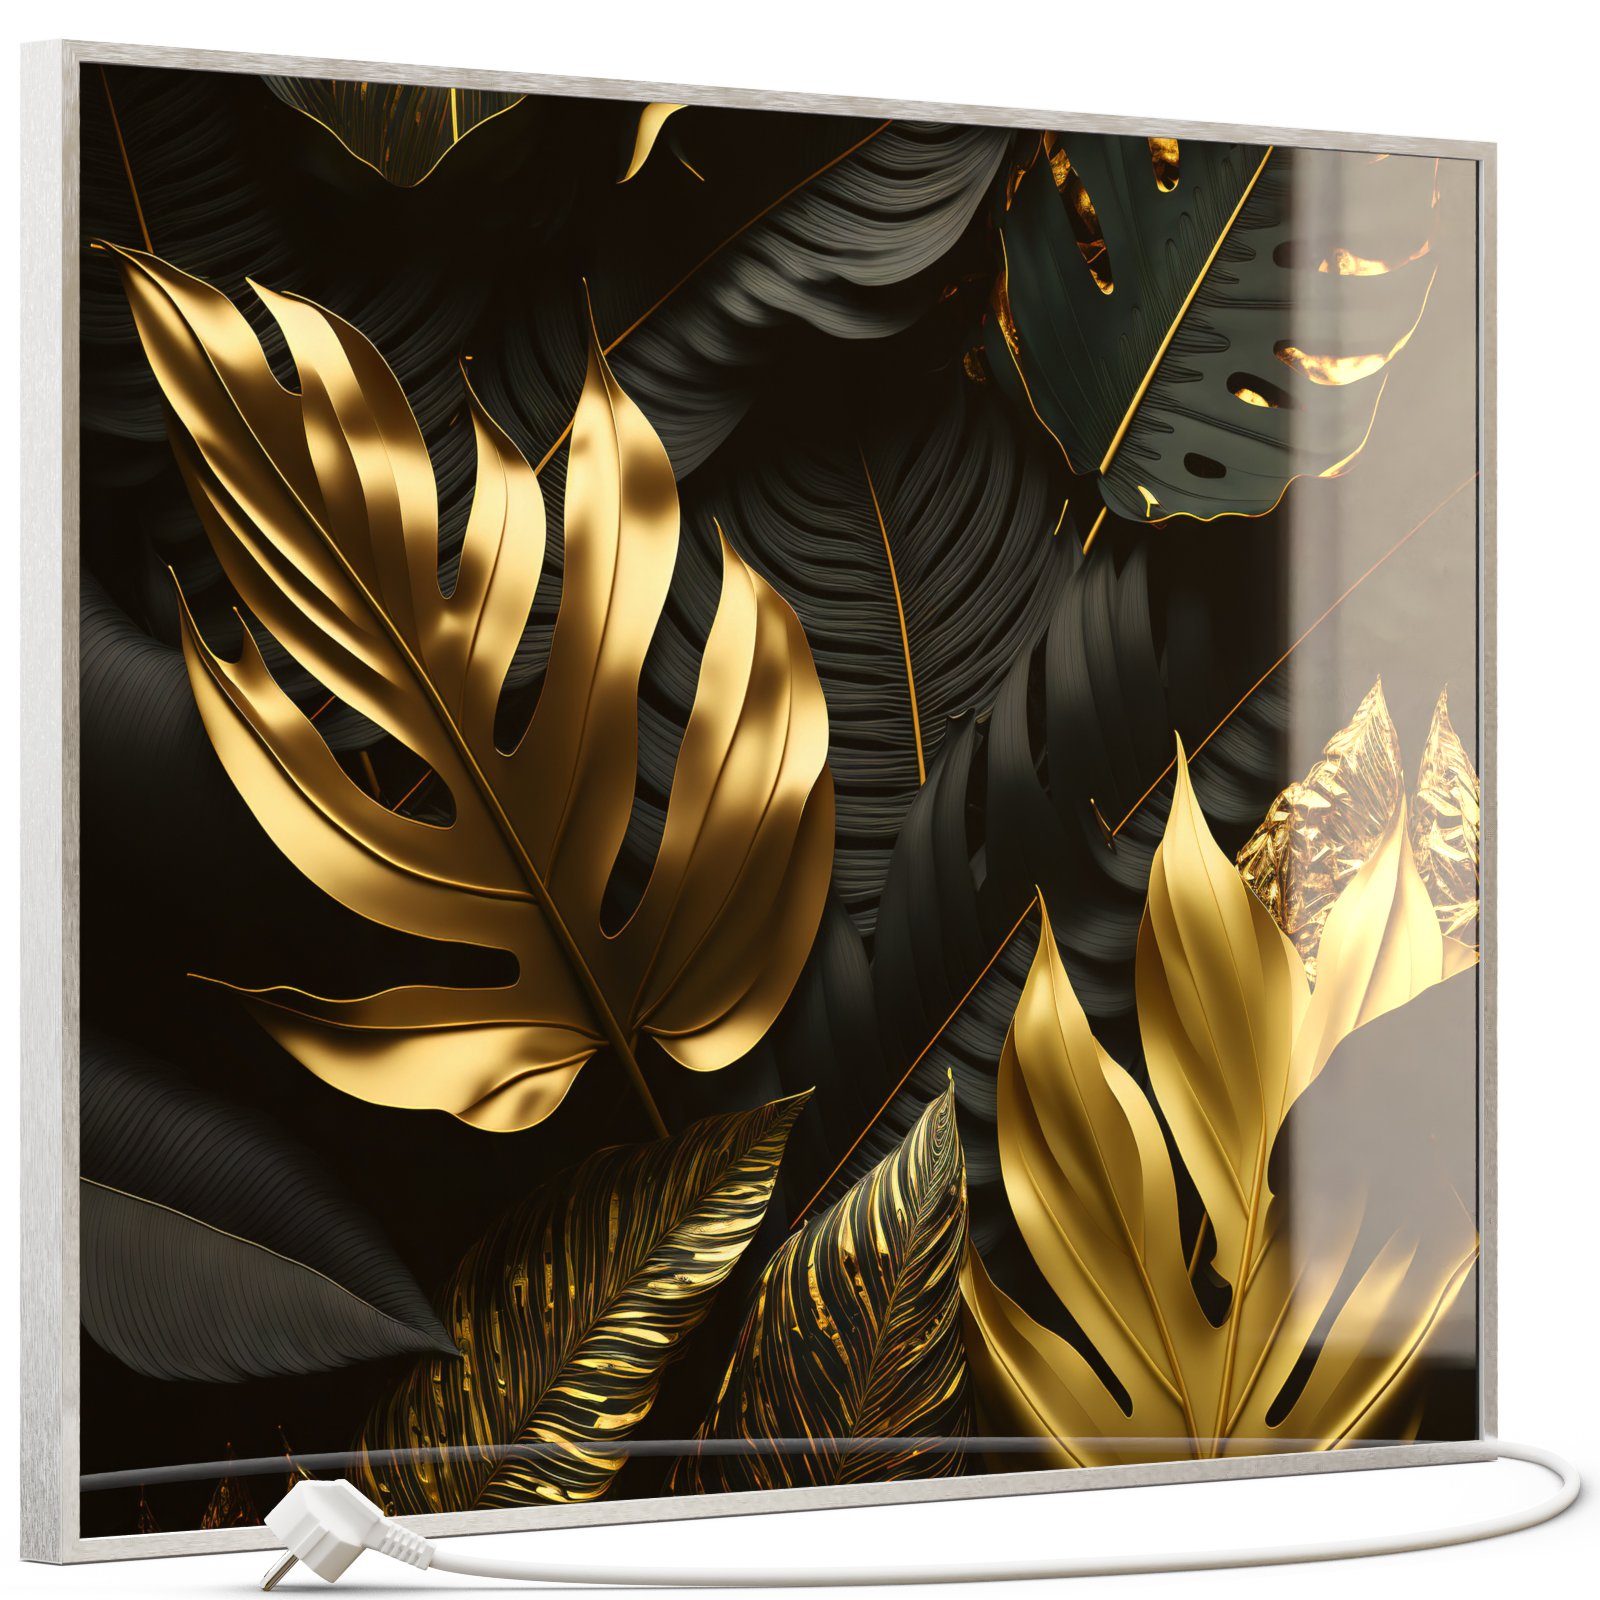 Blättern 350W-1200W, Inklusive Silber STEINFELD Heizsysteme 070 Goldenen Thermostat, Bild Glas Infrarotheizung,